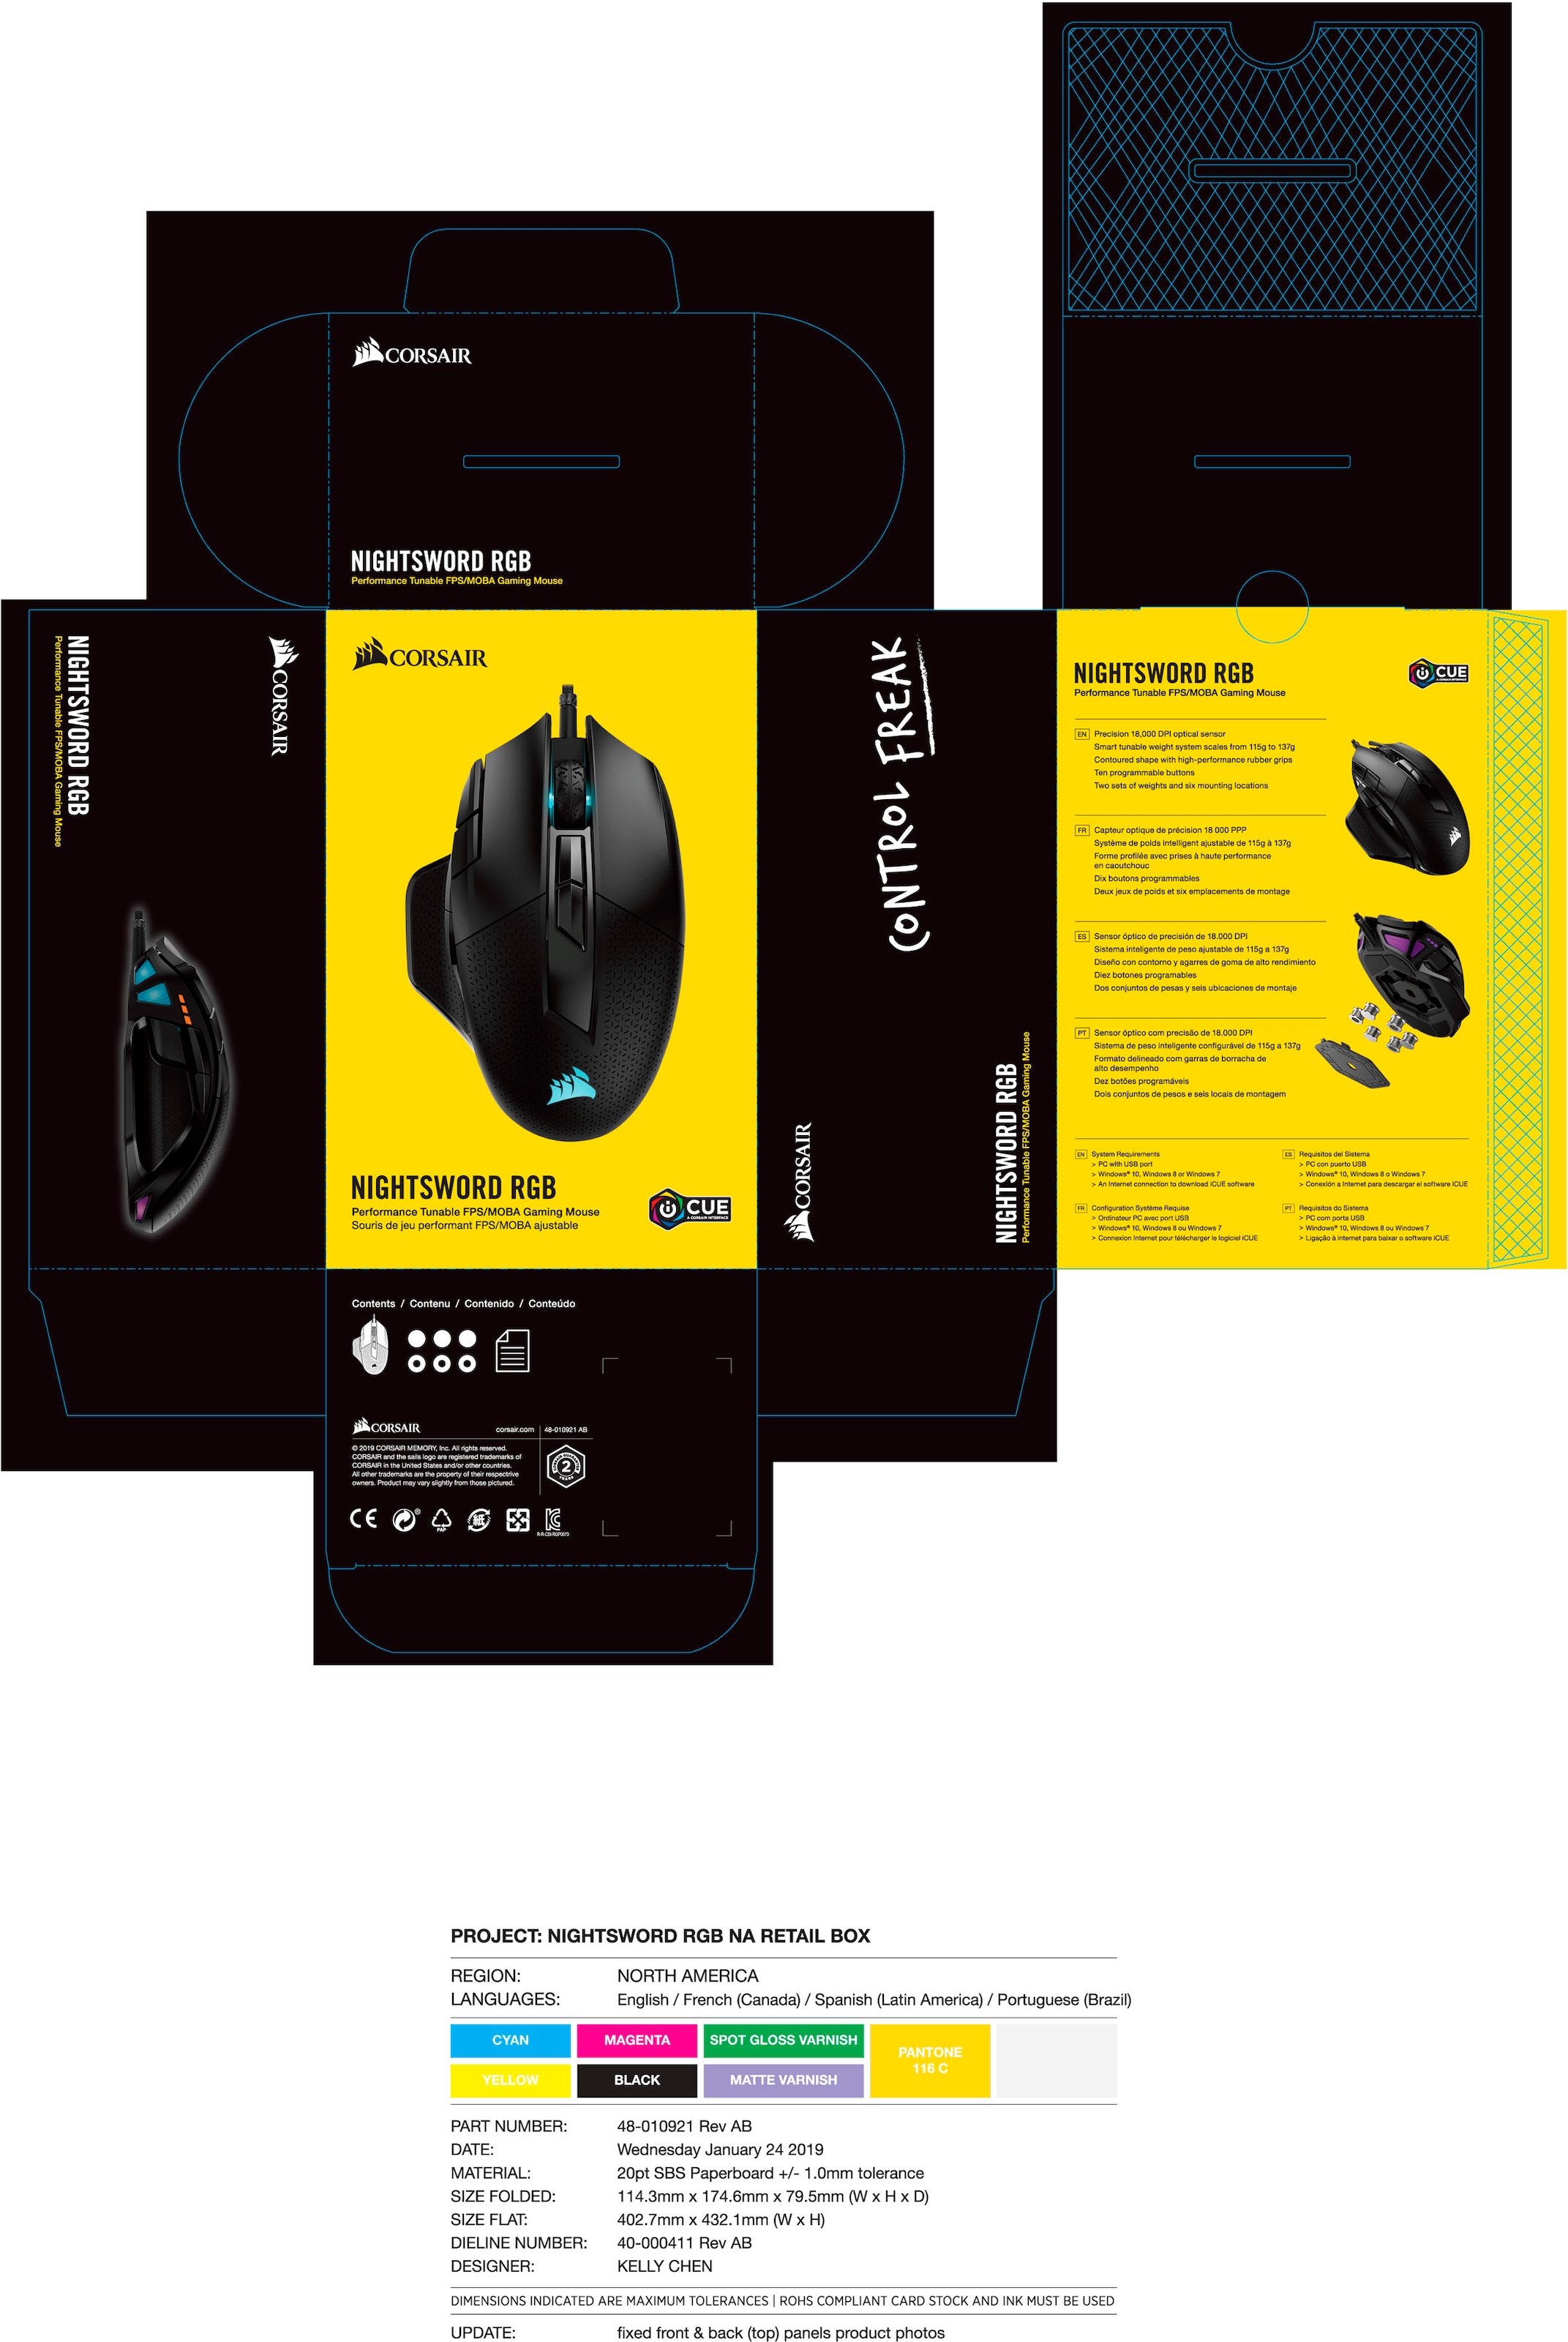 Corsair Gaming-Maus »NIGHTSWORD RGB PerformanceTunable Gaming Mouse«